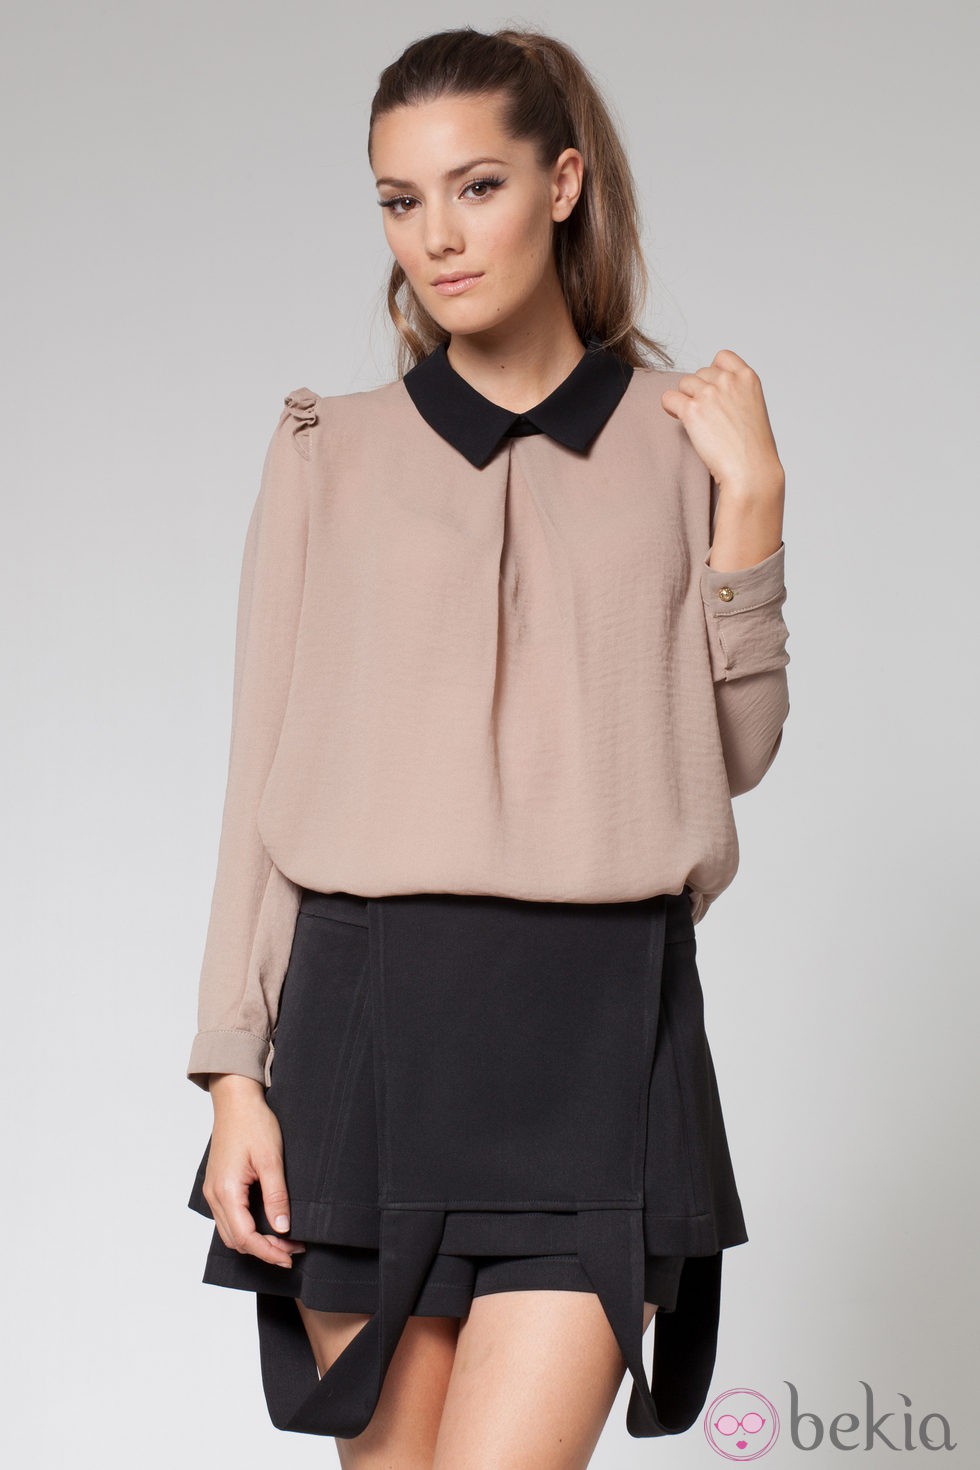 Blusa marrón con cuello negro de la colección otoño/invierno 2013 de Poète